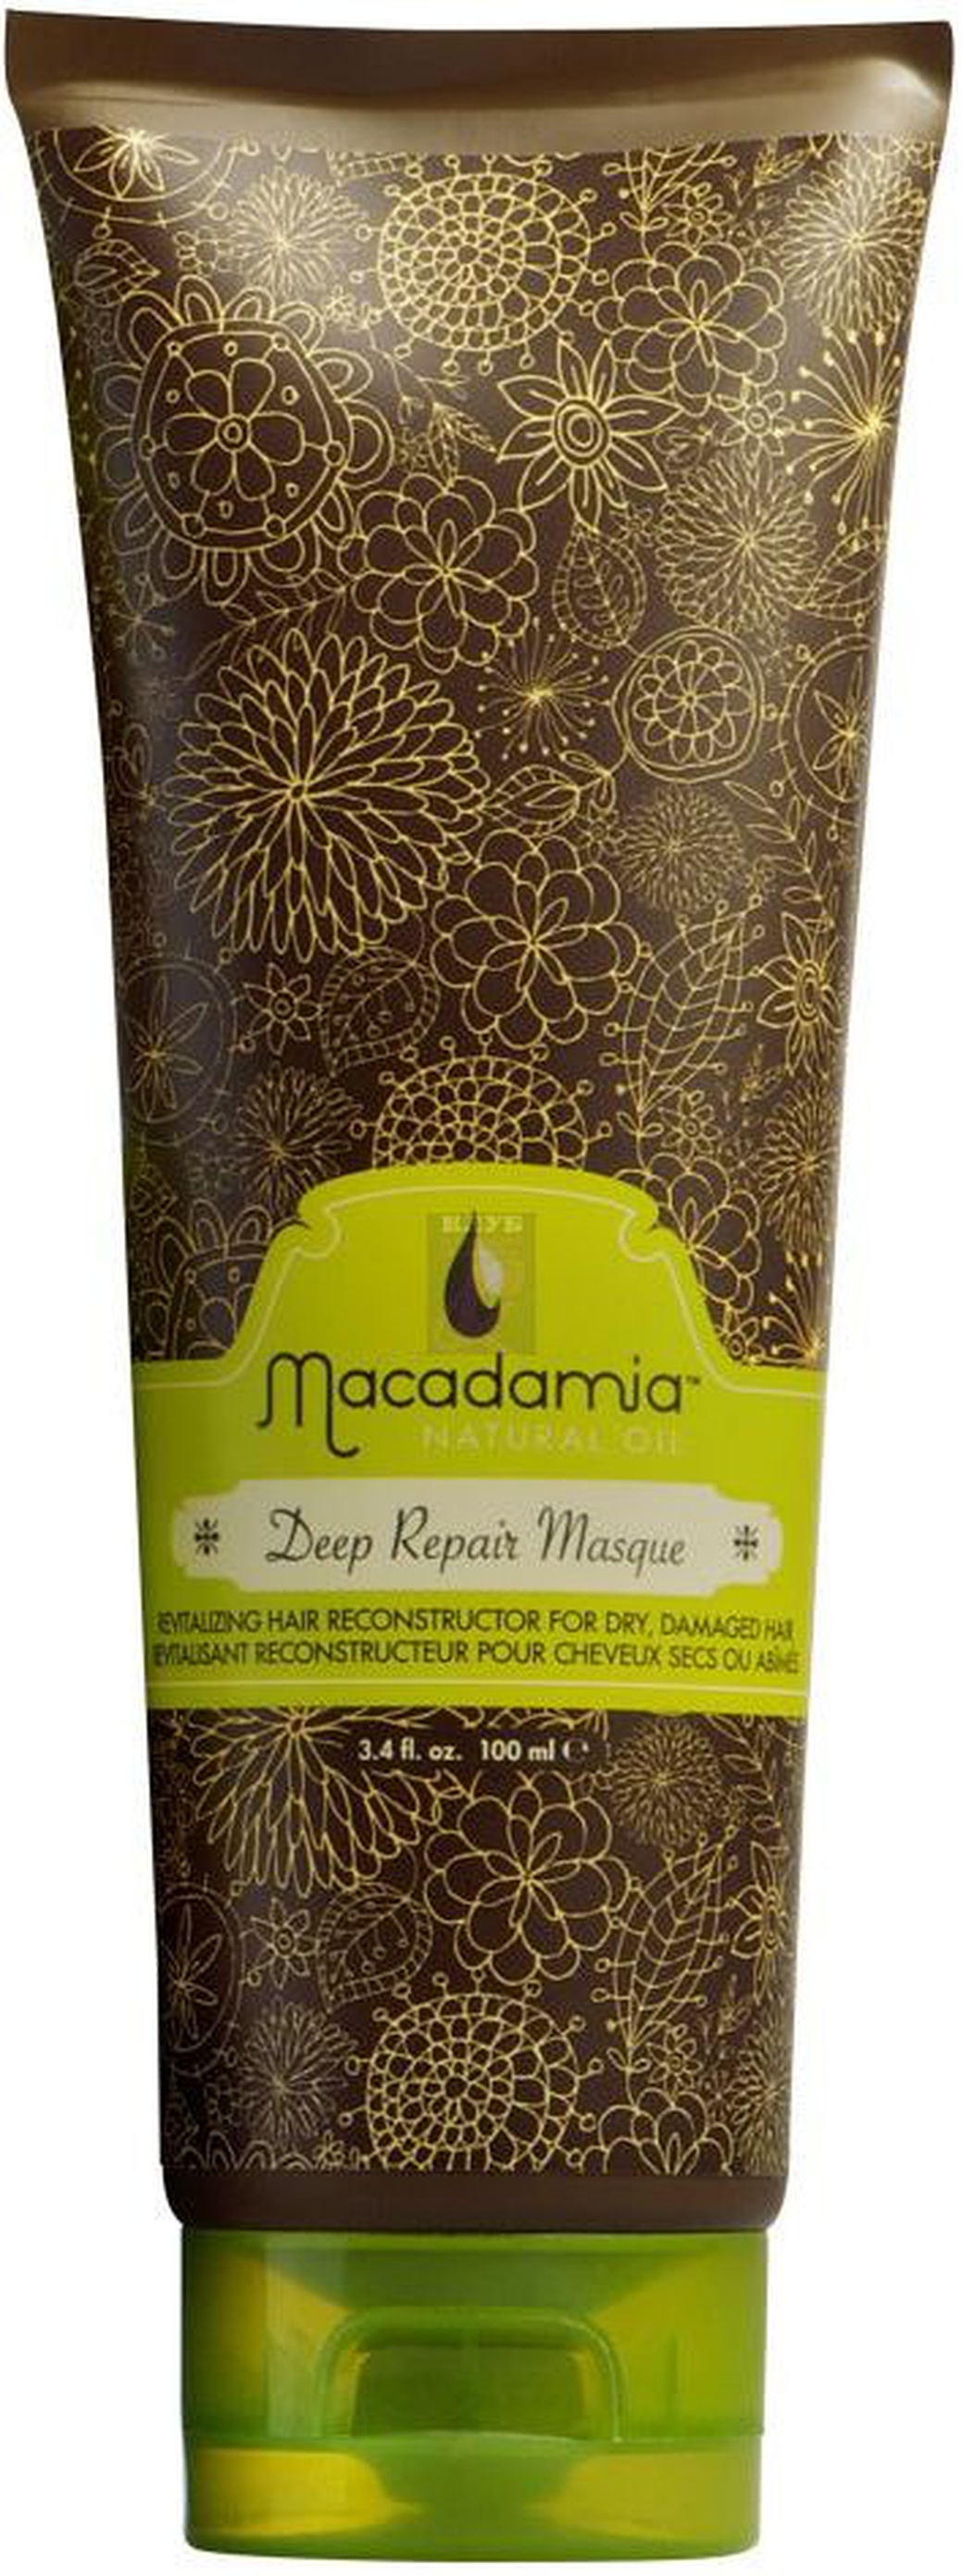 Macadamia маска восстанавливающая интенсивного действия с маслом арганы и макадамии Macadamia Natural Oil, 100 ml фото